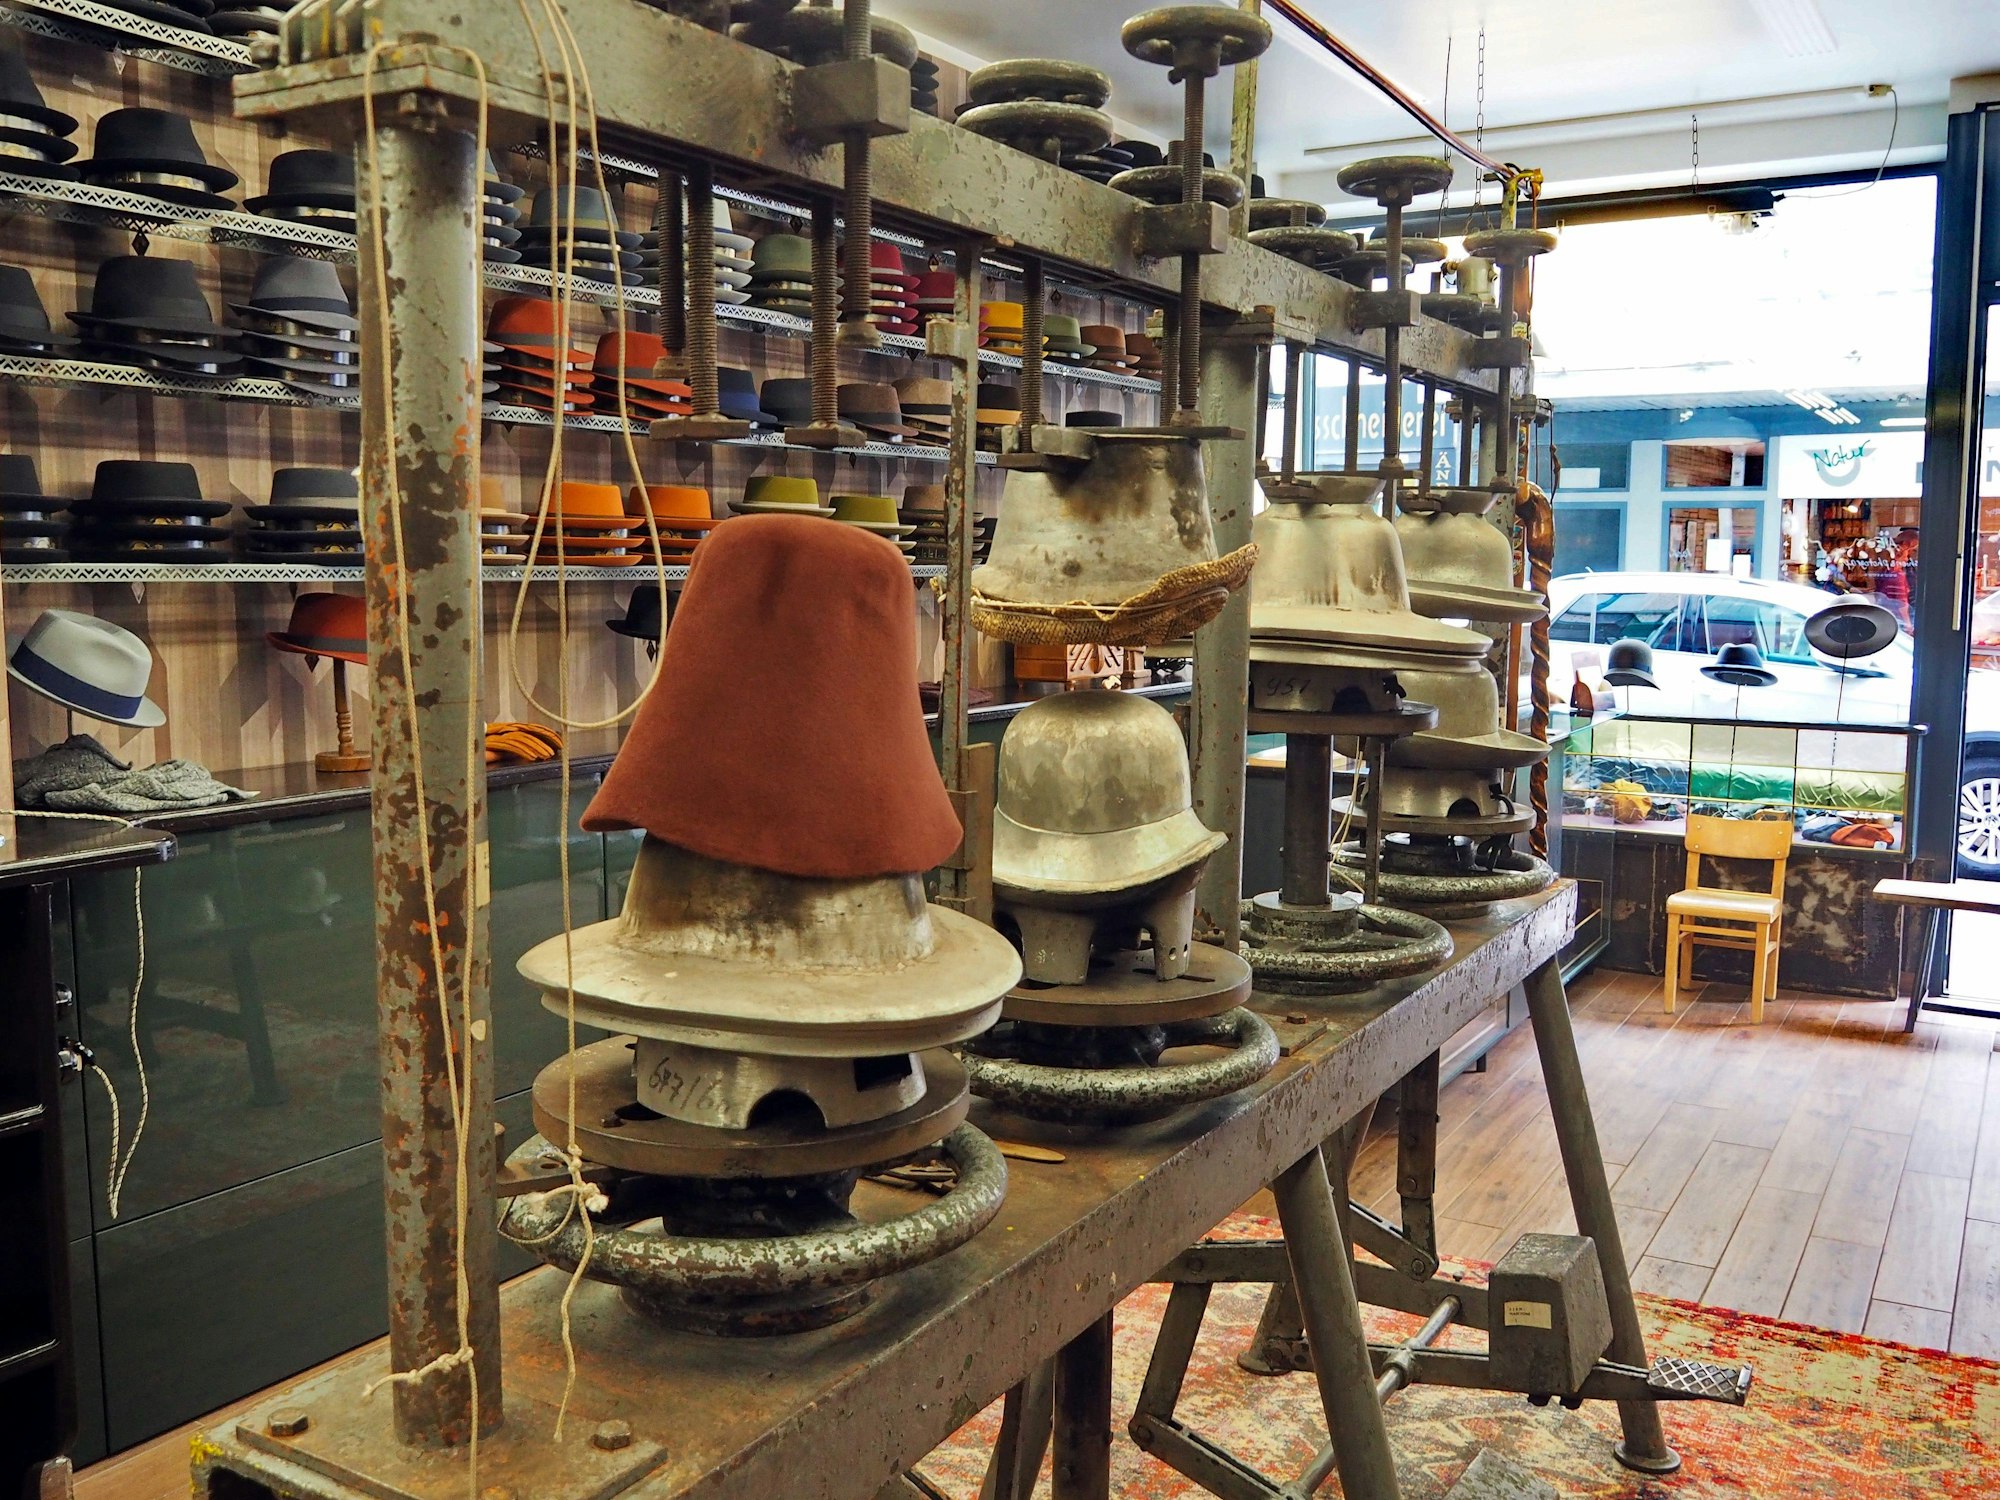 Eine Maschine auf einem Holzgestell, hat verschiedene gusseiserne Formen für Hüte, ein Filzhut ist als Rohling zu sehen.